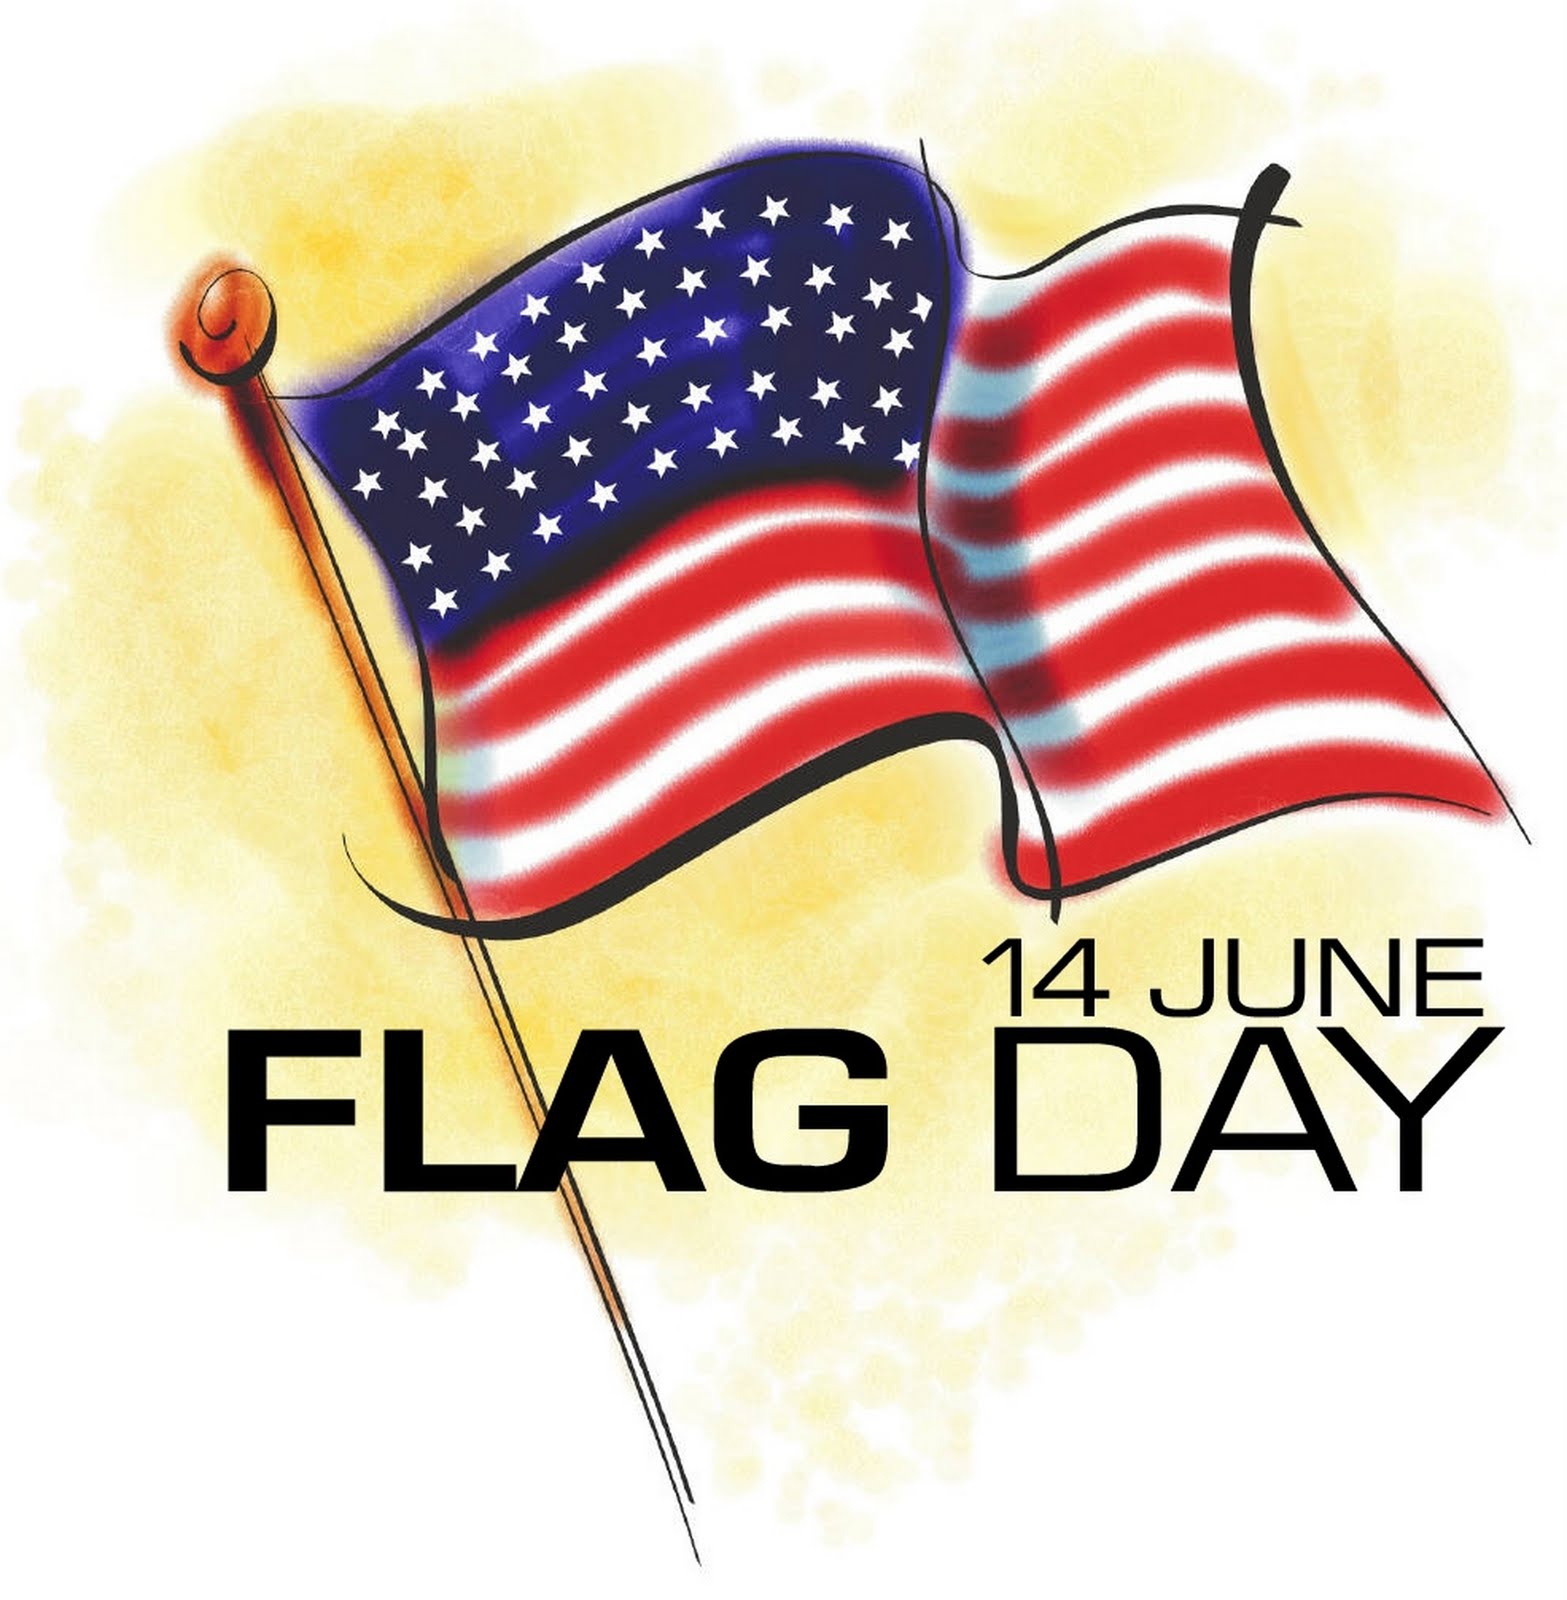 Flag-Day-June-14